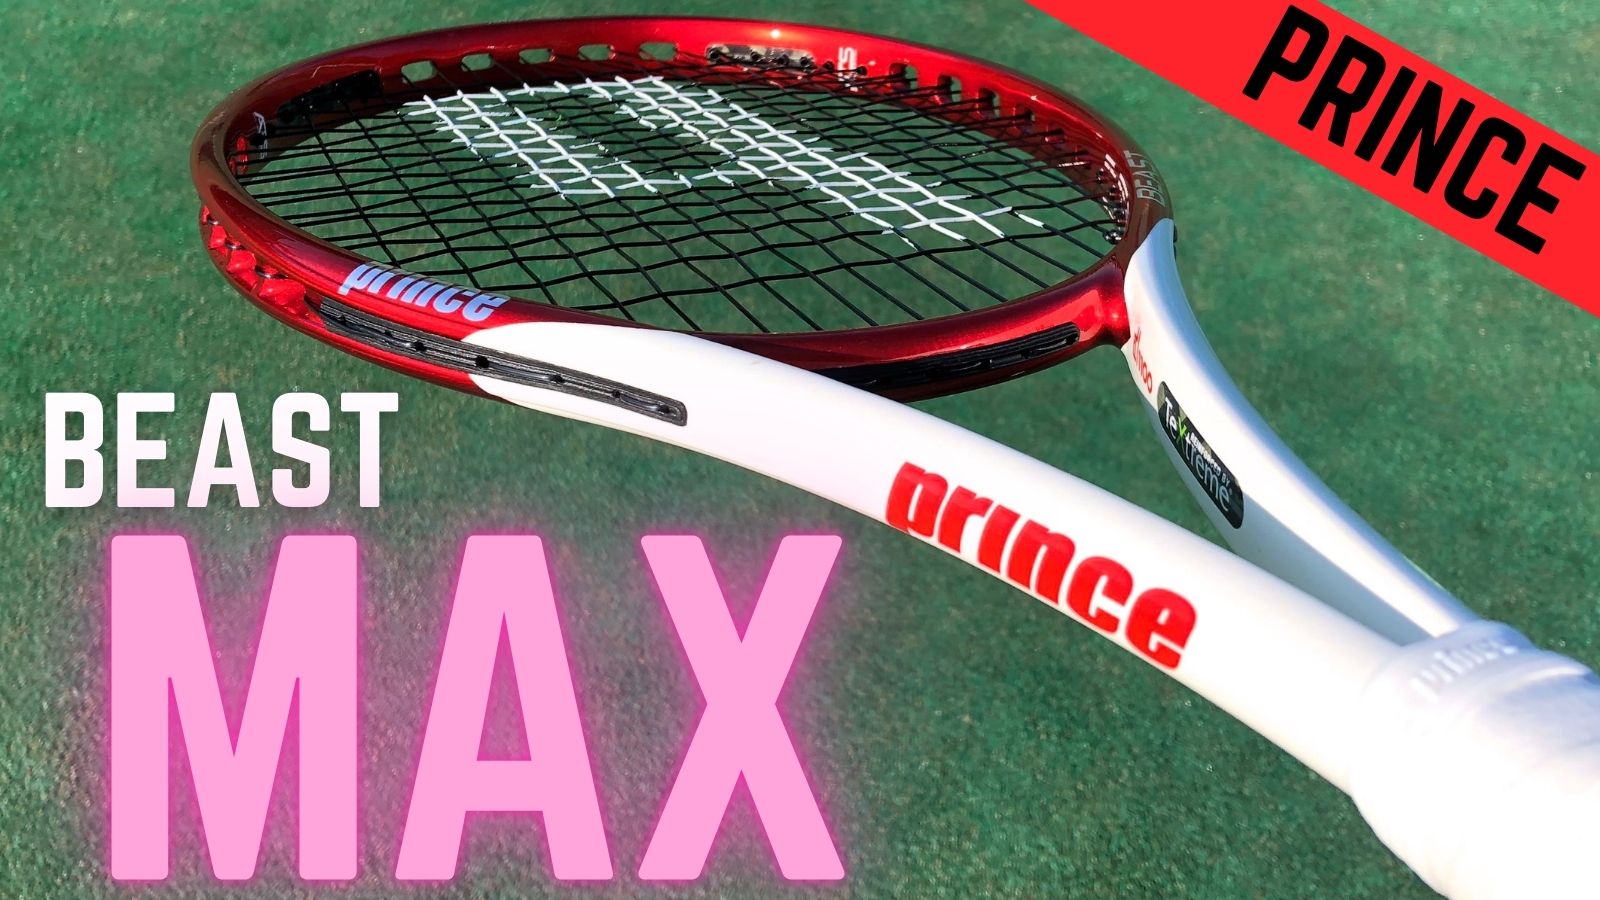 Prince プリンス BEAST MAX ビーストマックス - ラケット(硬式用)